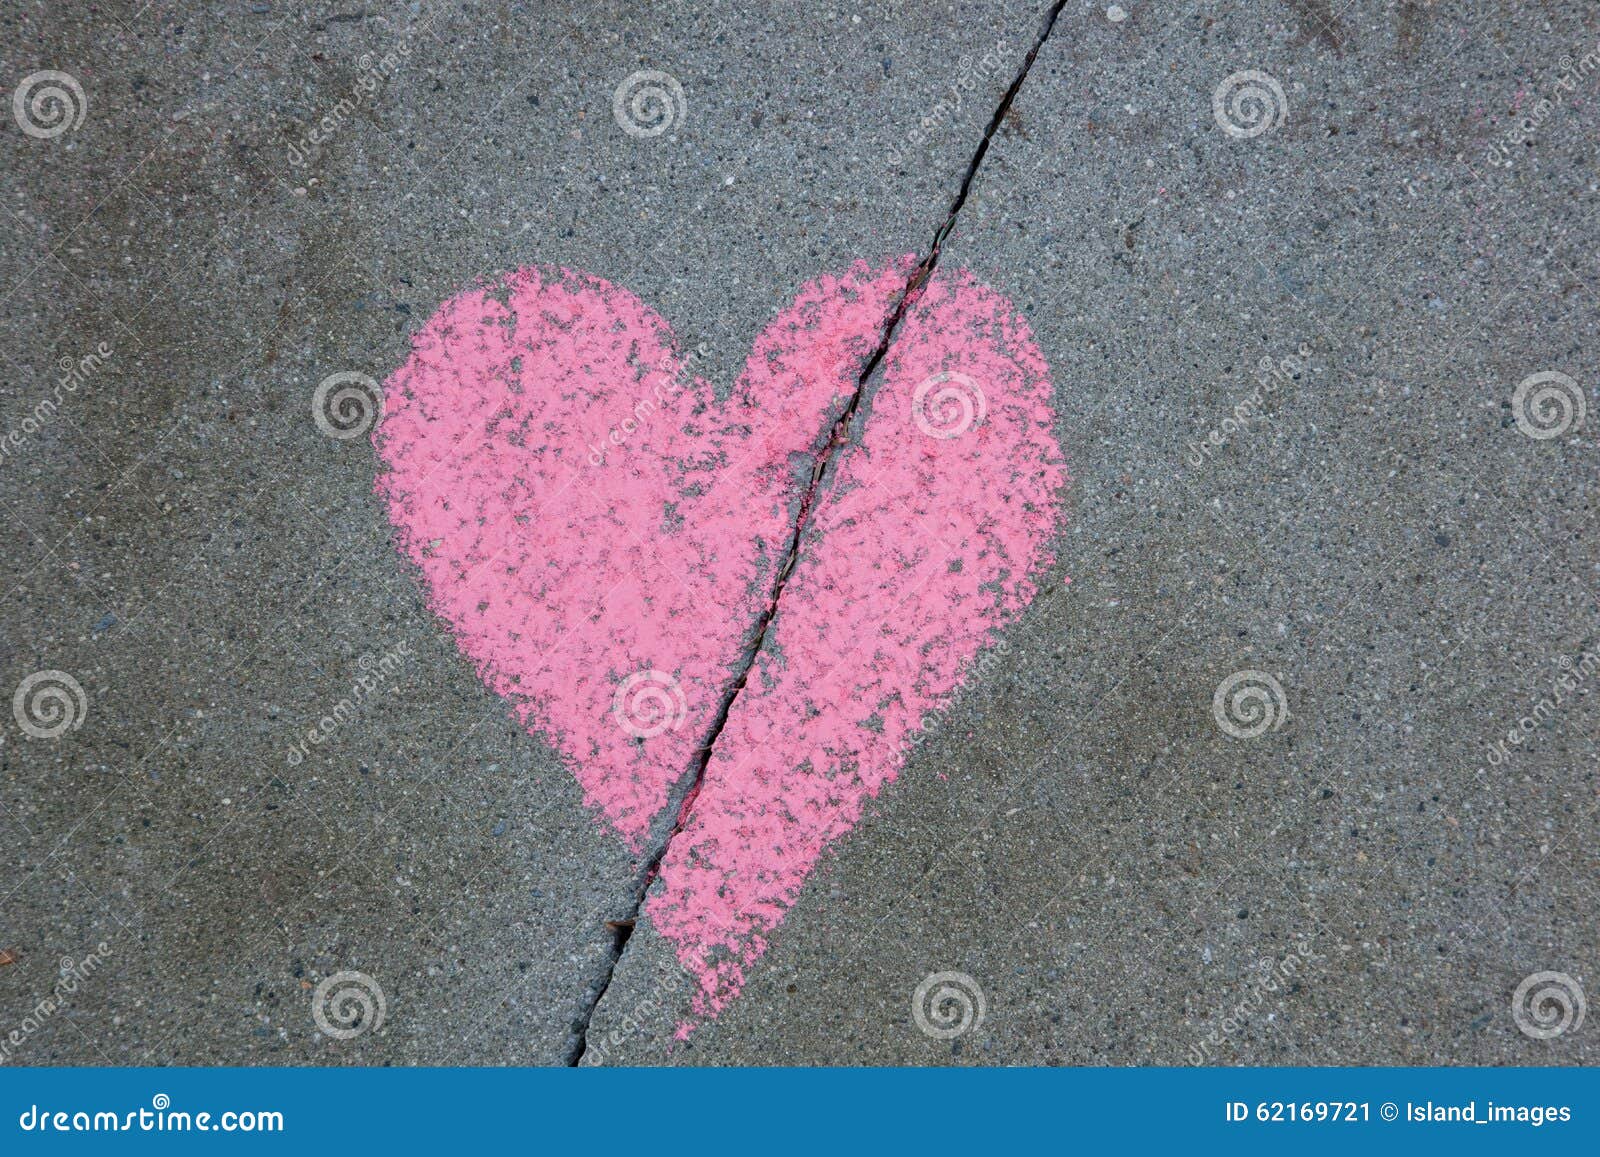 broken heart drawn on sidewalk with chalk